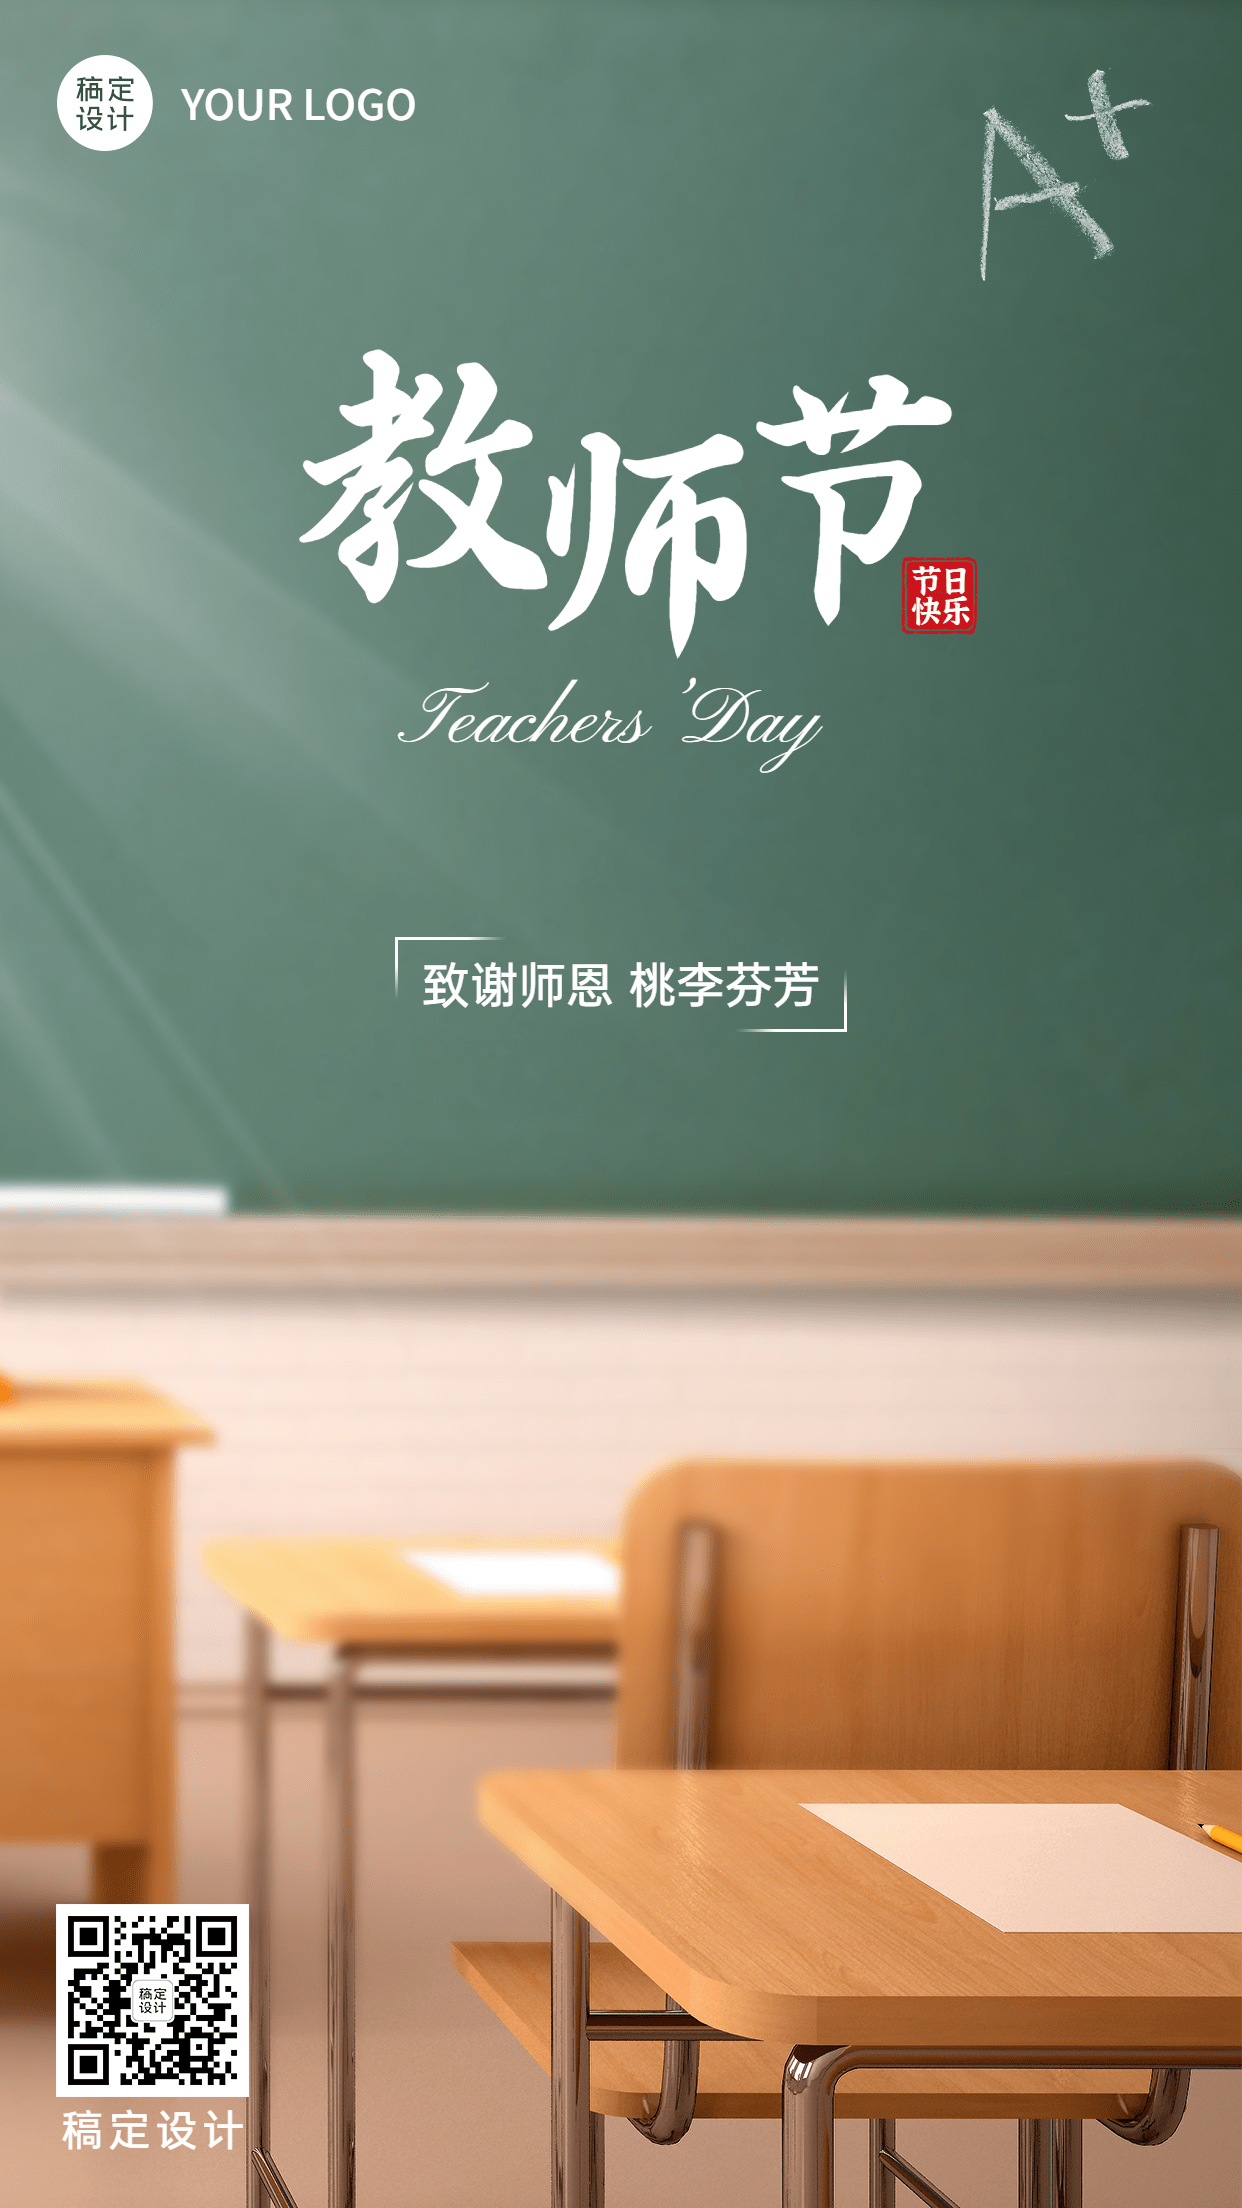 教师节节日祝福排版手机海报预览效果